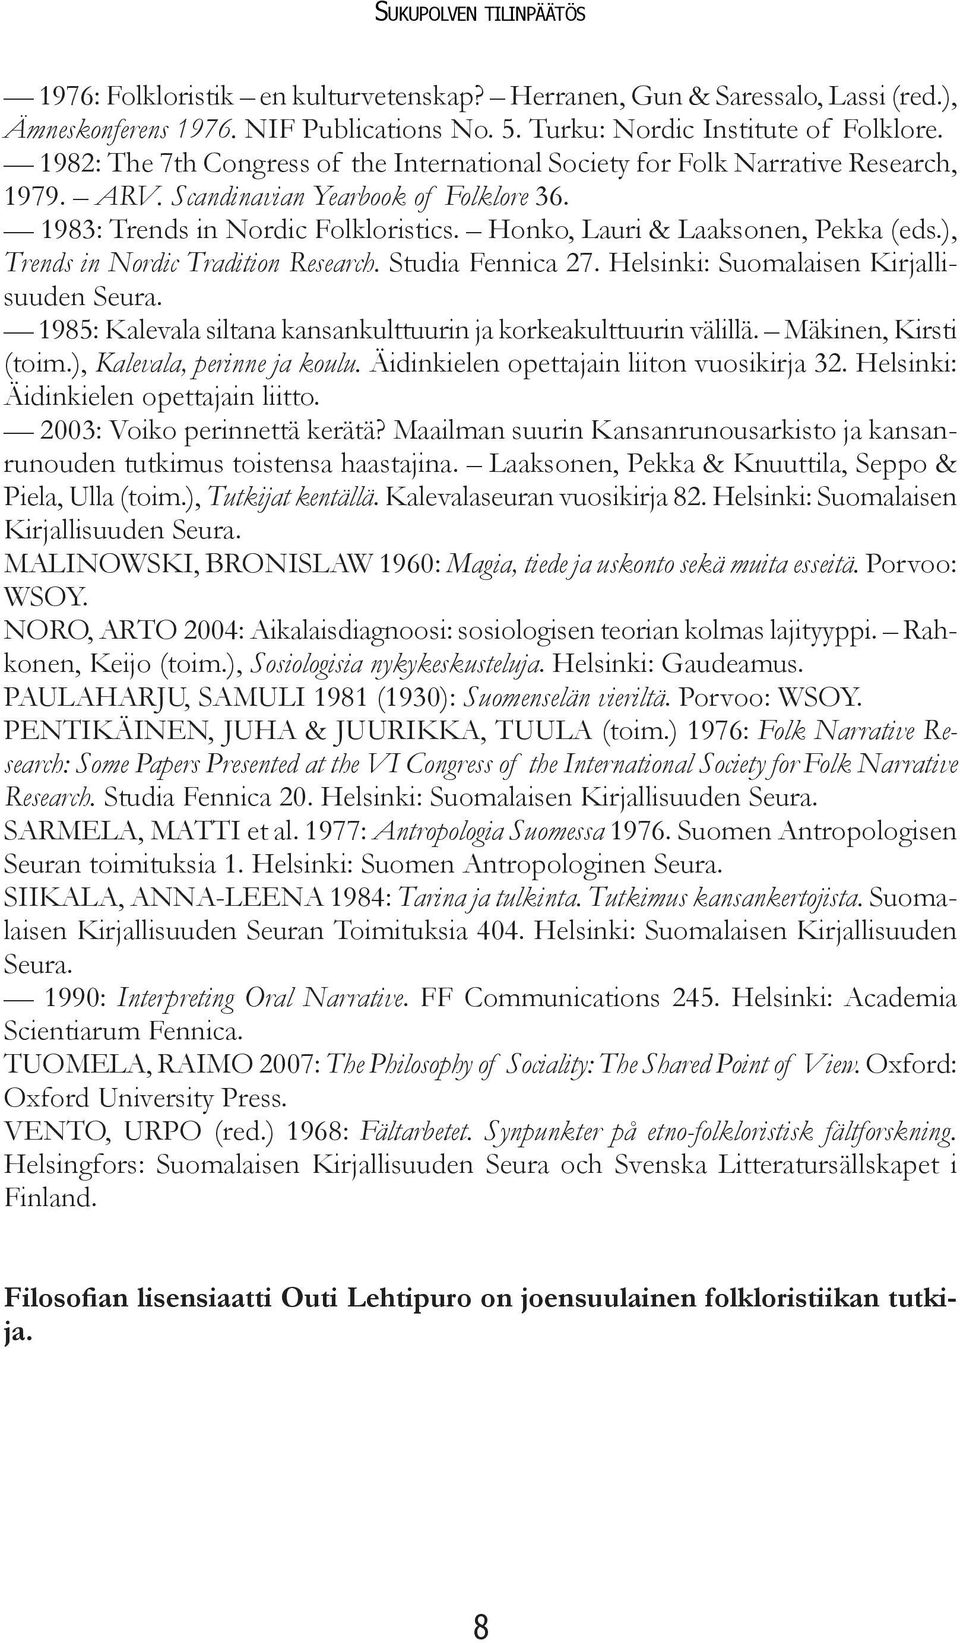 Honko, Lauri & Laaksonen, Pekka (eds.), Trends in Nordic Tradition Research. Studia Fennica 27. Helsinki: Suomalaisen Kirjallisuuden Seura.